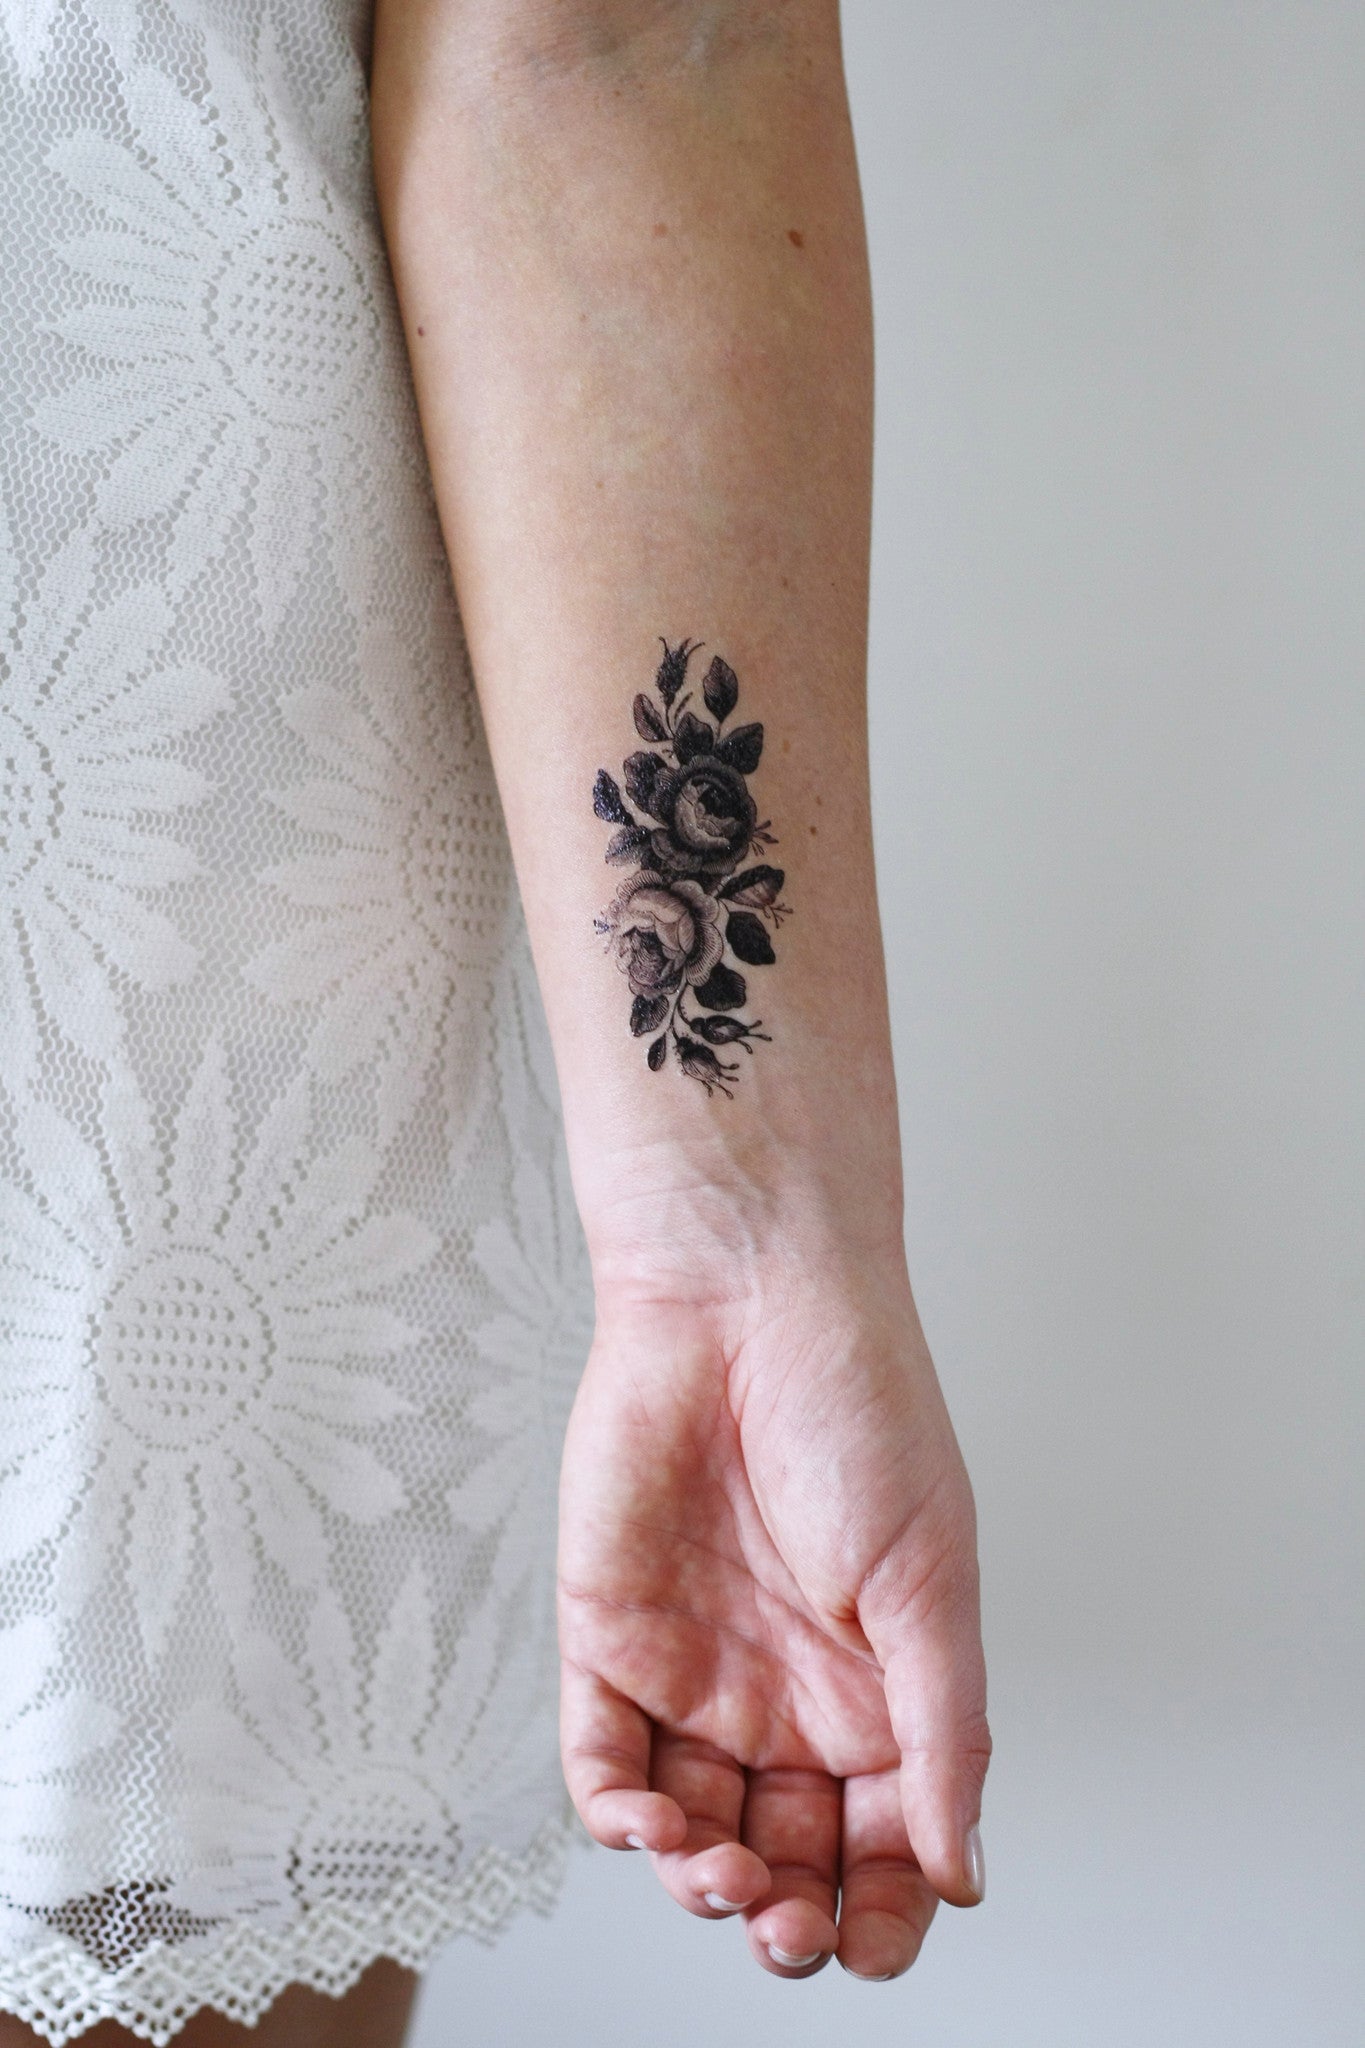 Small roses temporary tattoo - Temporary Tattoos by Tattoorary